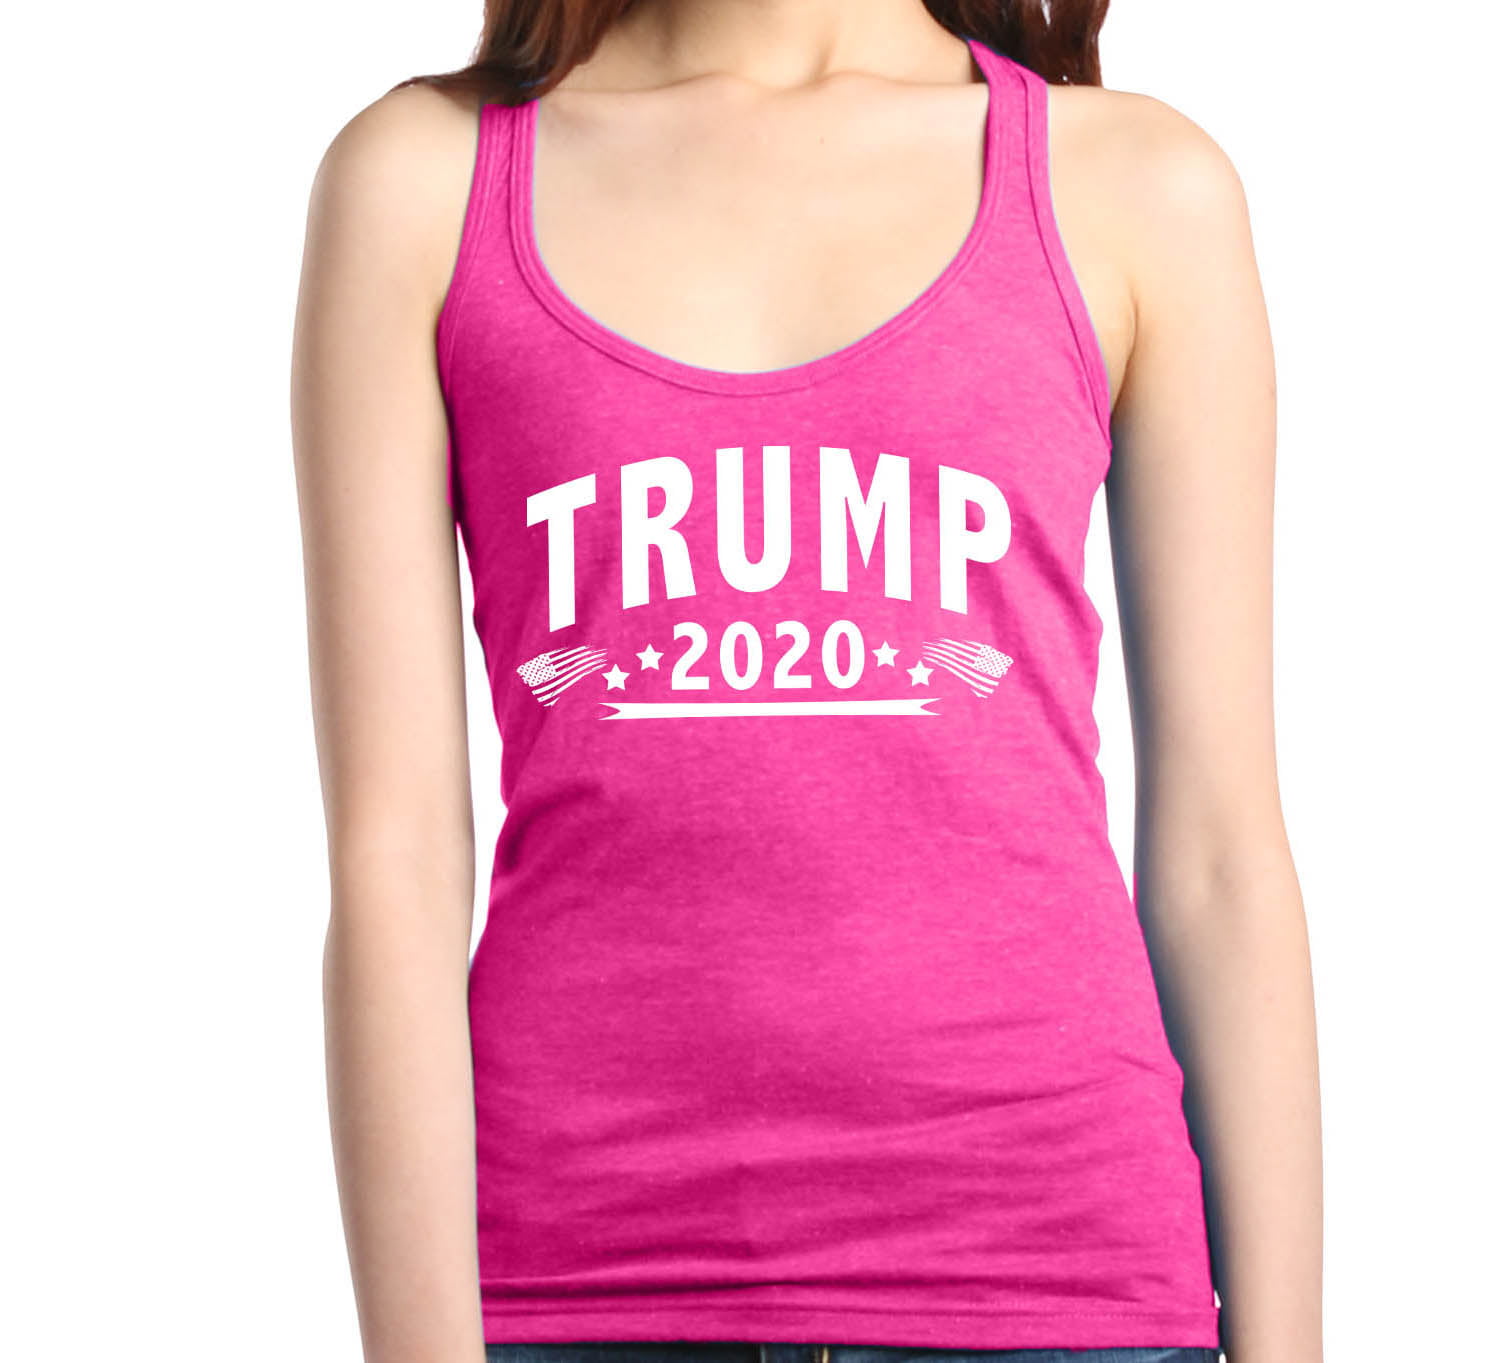 shop4ever Trump 2020 Mens Tank Top President Tank Tops